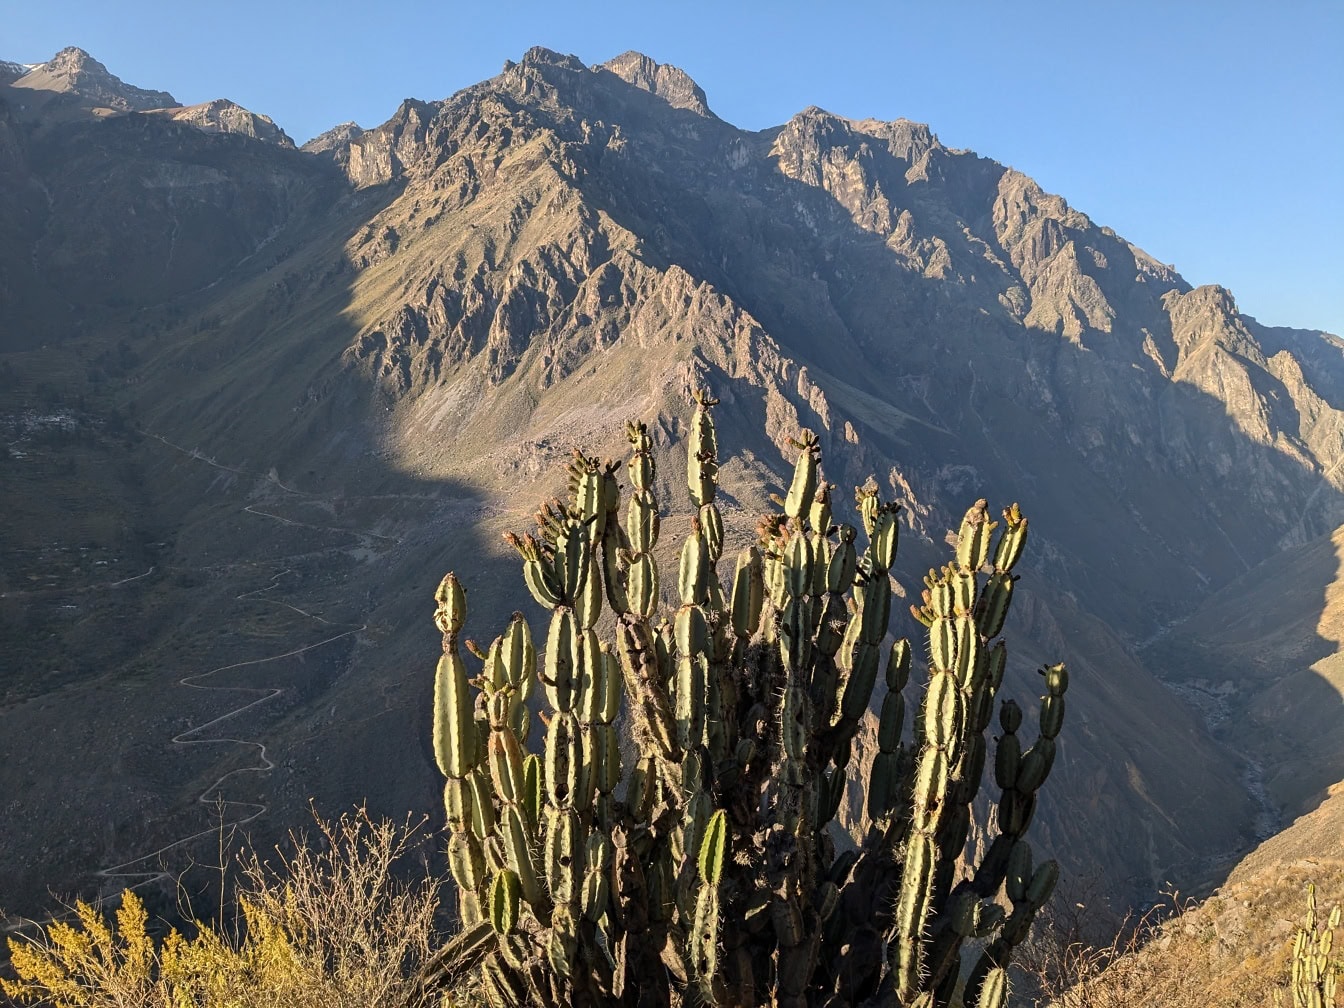 Kaktus zwany kaktusem jabłoni peruwiańskiej (Cereus repandus) przed górą w kanionie Colca w Peru